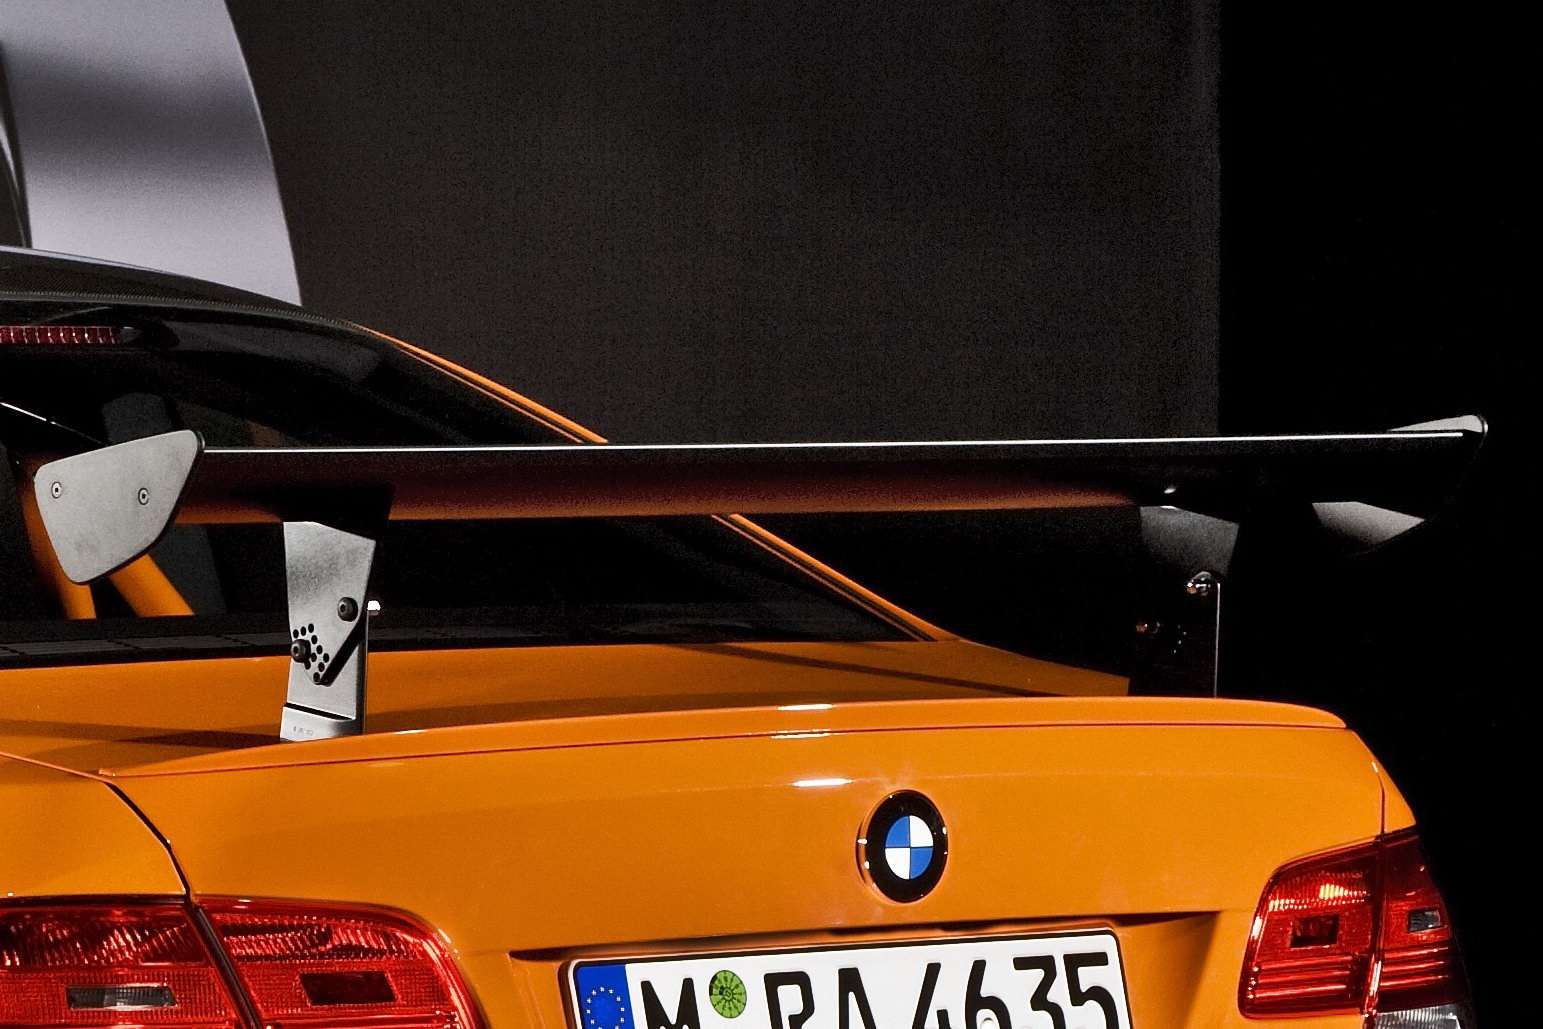 2011 BMW M3 GTS 2009